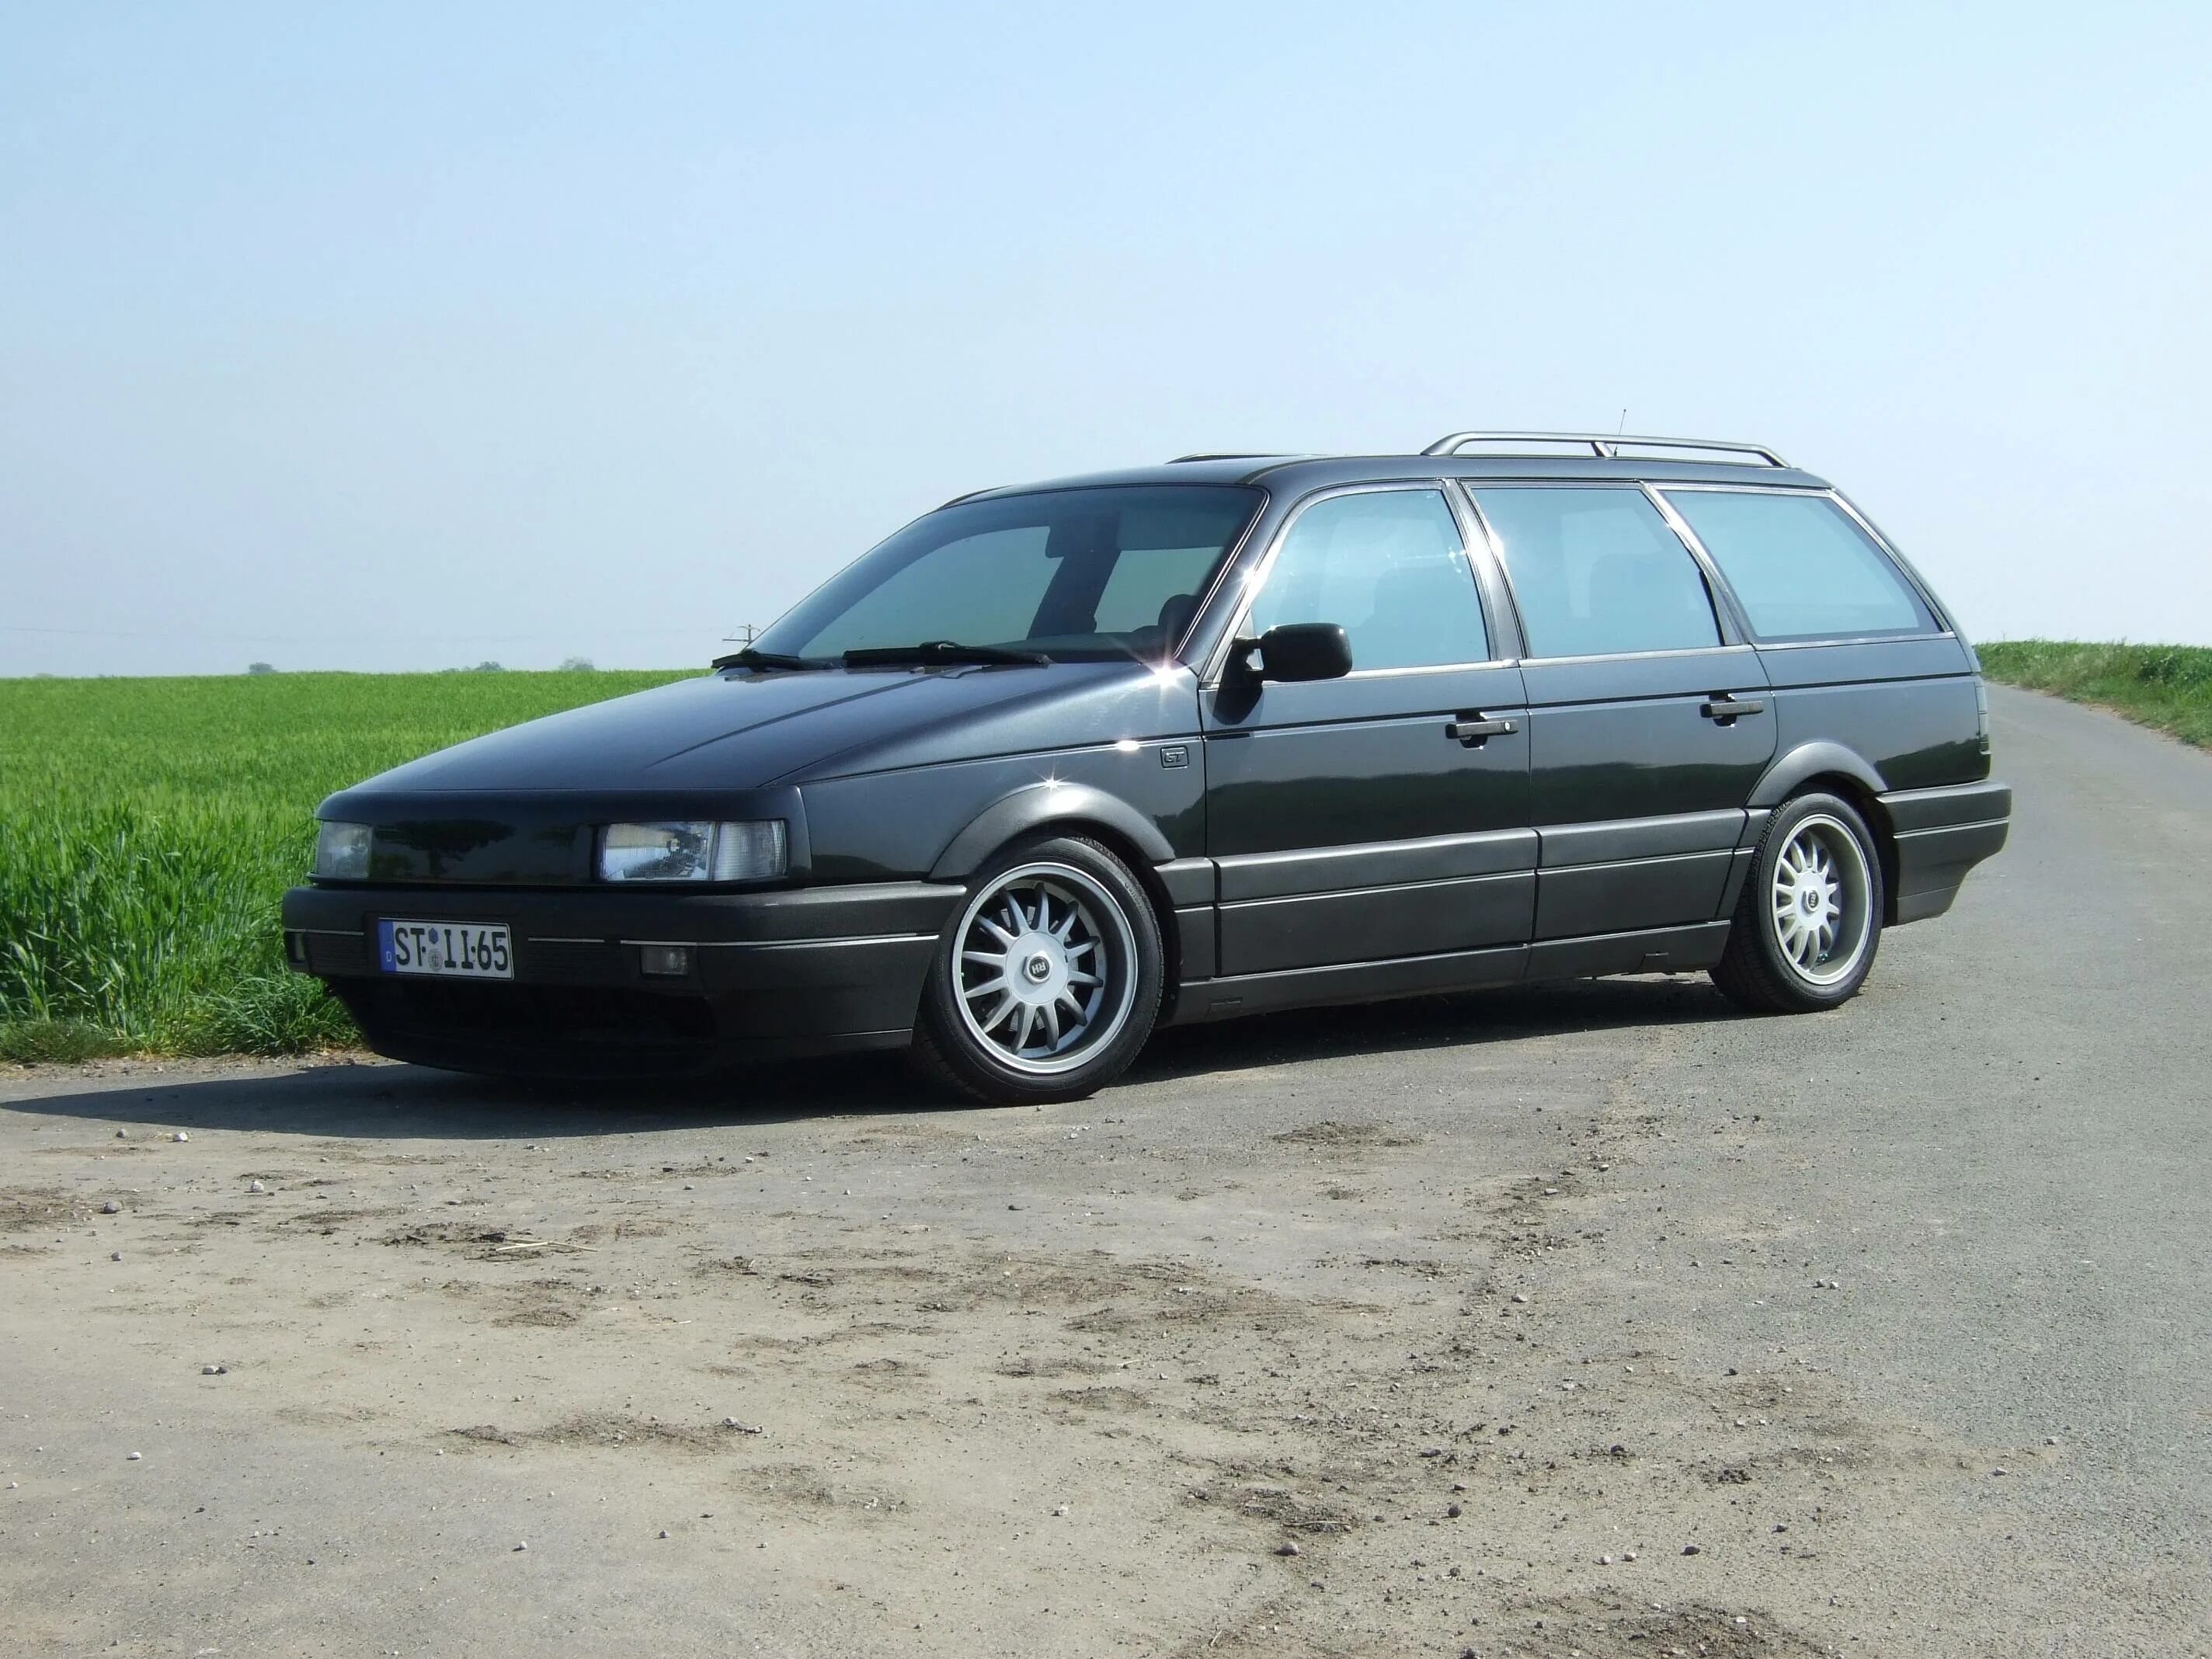 Купить фольксваген пассат в3. Фольксваген Пассат б3 универсал. VW Passat b3 универсал чёрный. Фольксваген Пассат б3 б4. Volkswagen Passat b3 1990 универсал.